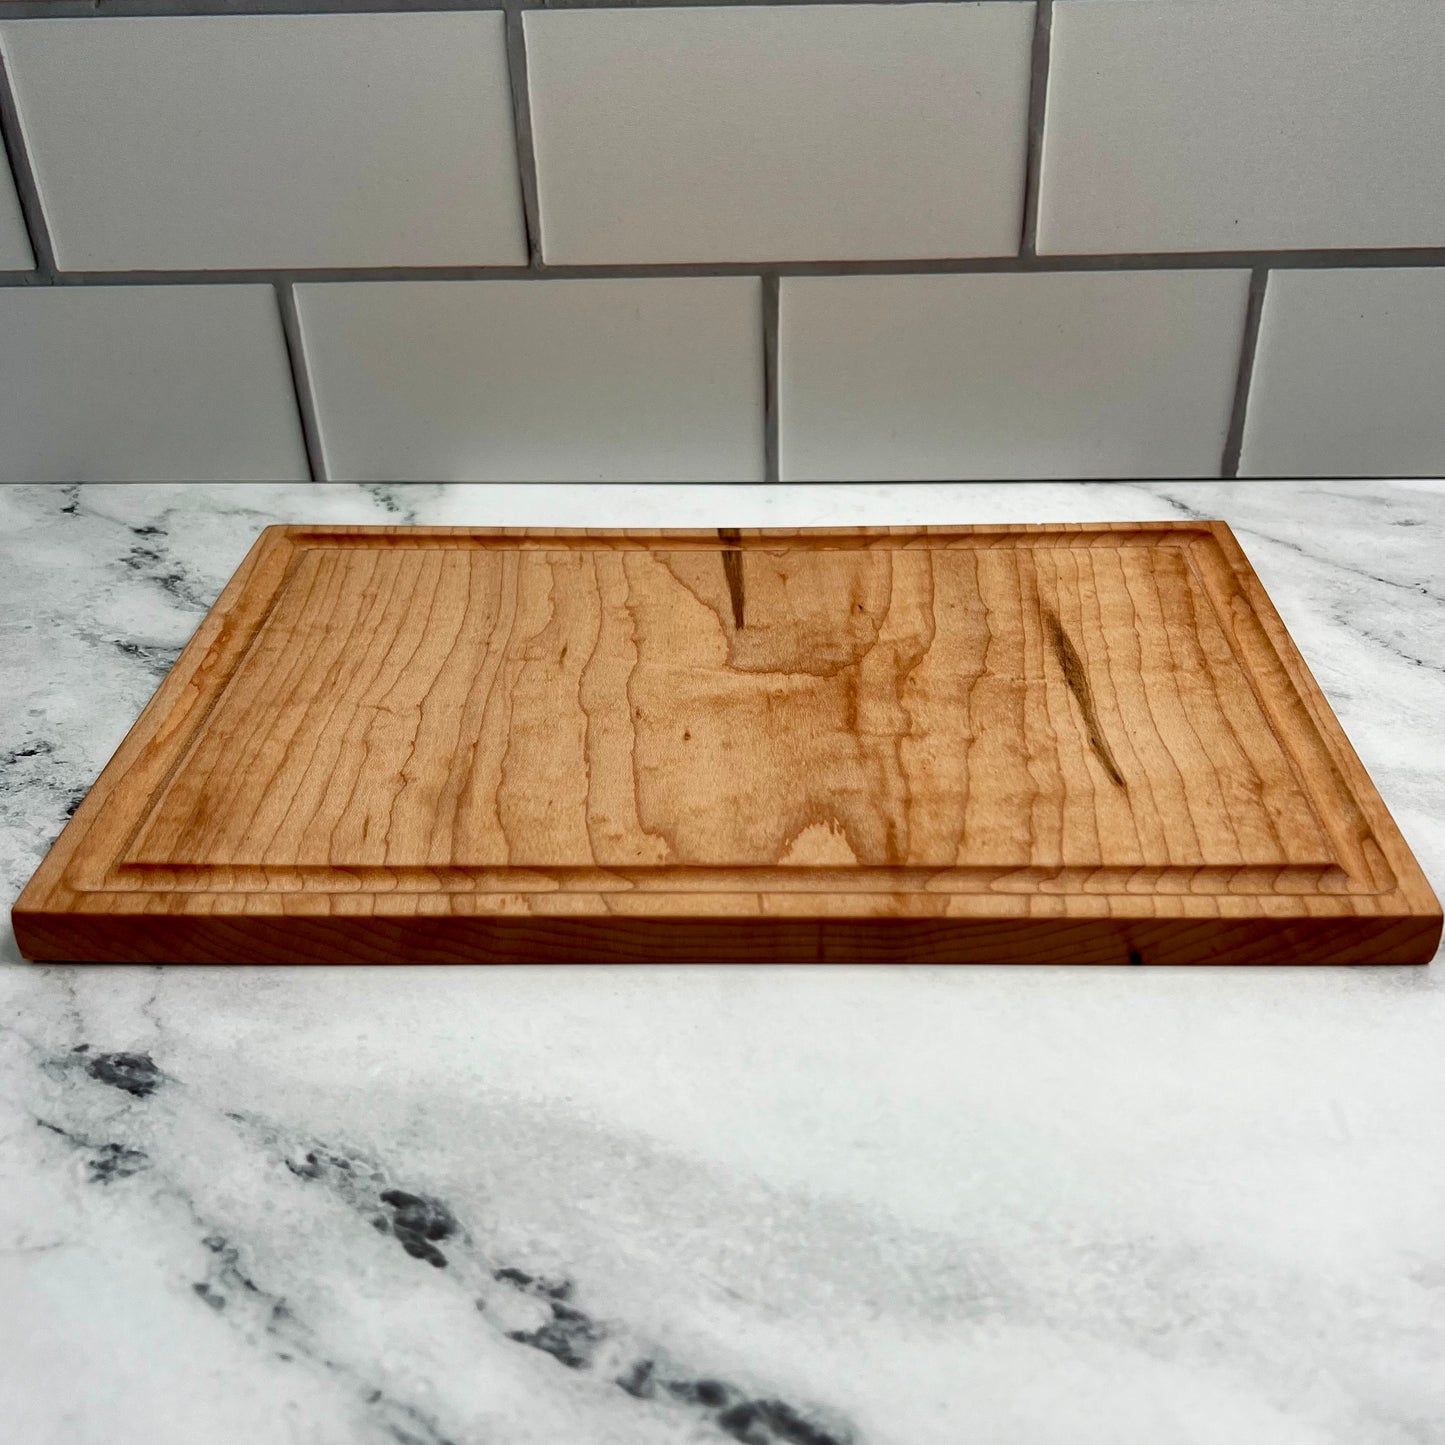 Maple Cutting Board 7.5x11 Inch